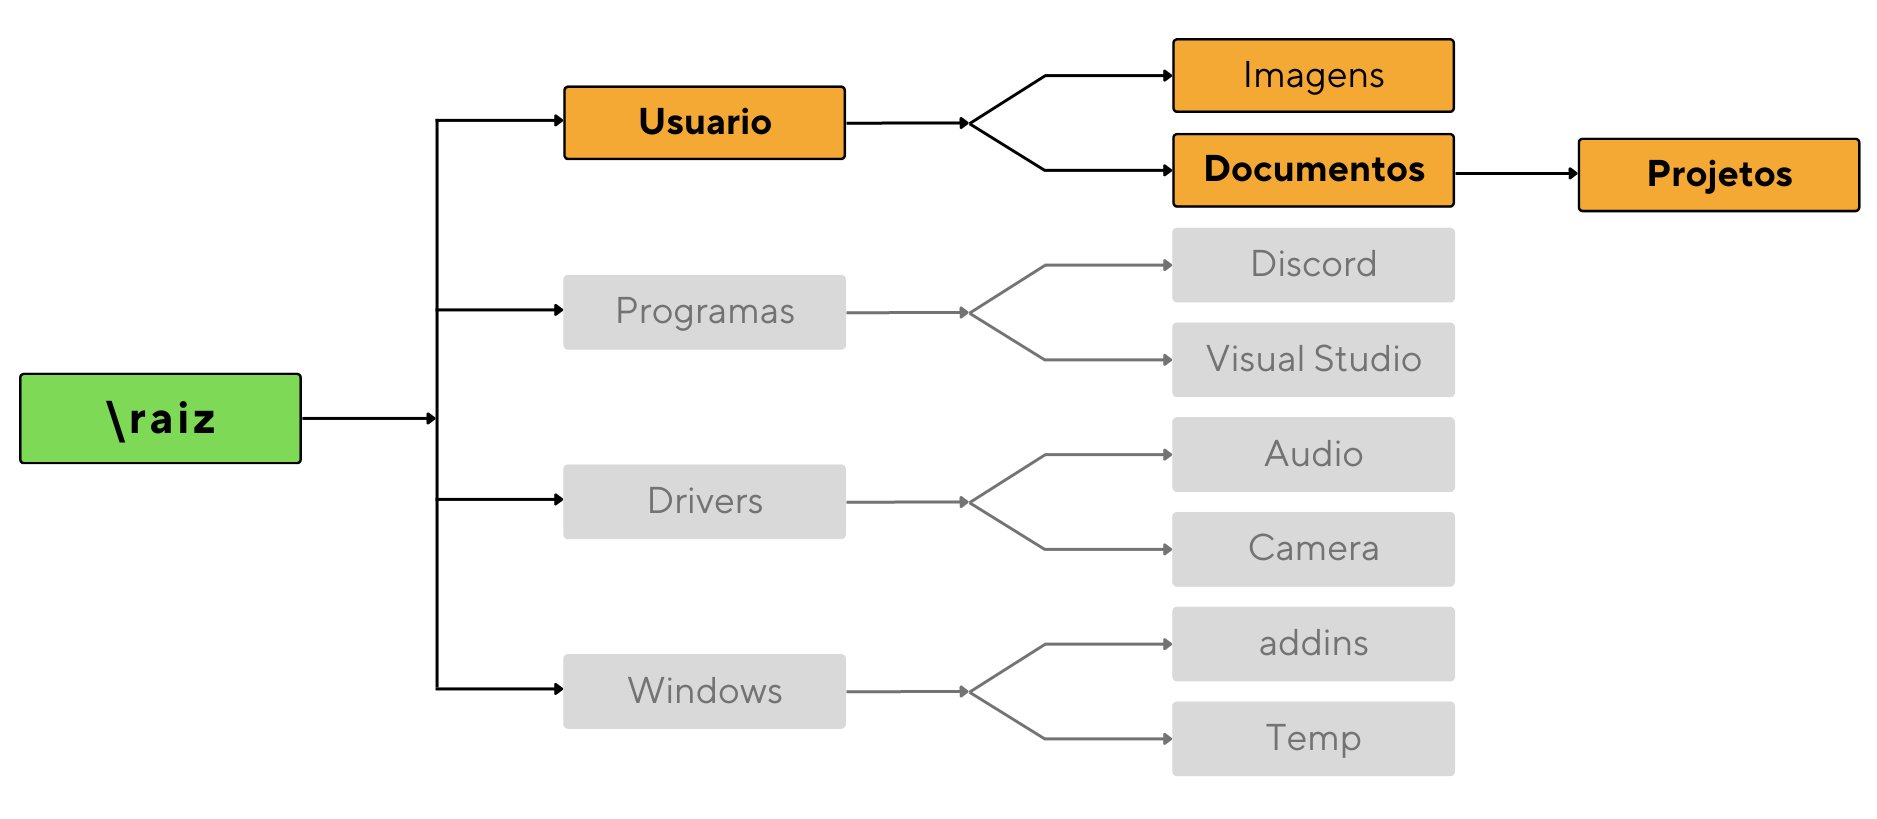 Representação da árvore de diretórios e sua hierarquia. O diretório “raiz > Usuario > Imagens, Documentos > Projetos” está destacado enquanto o restante está apagado.